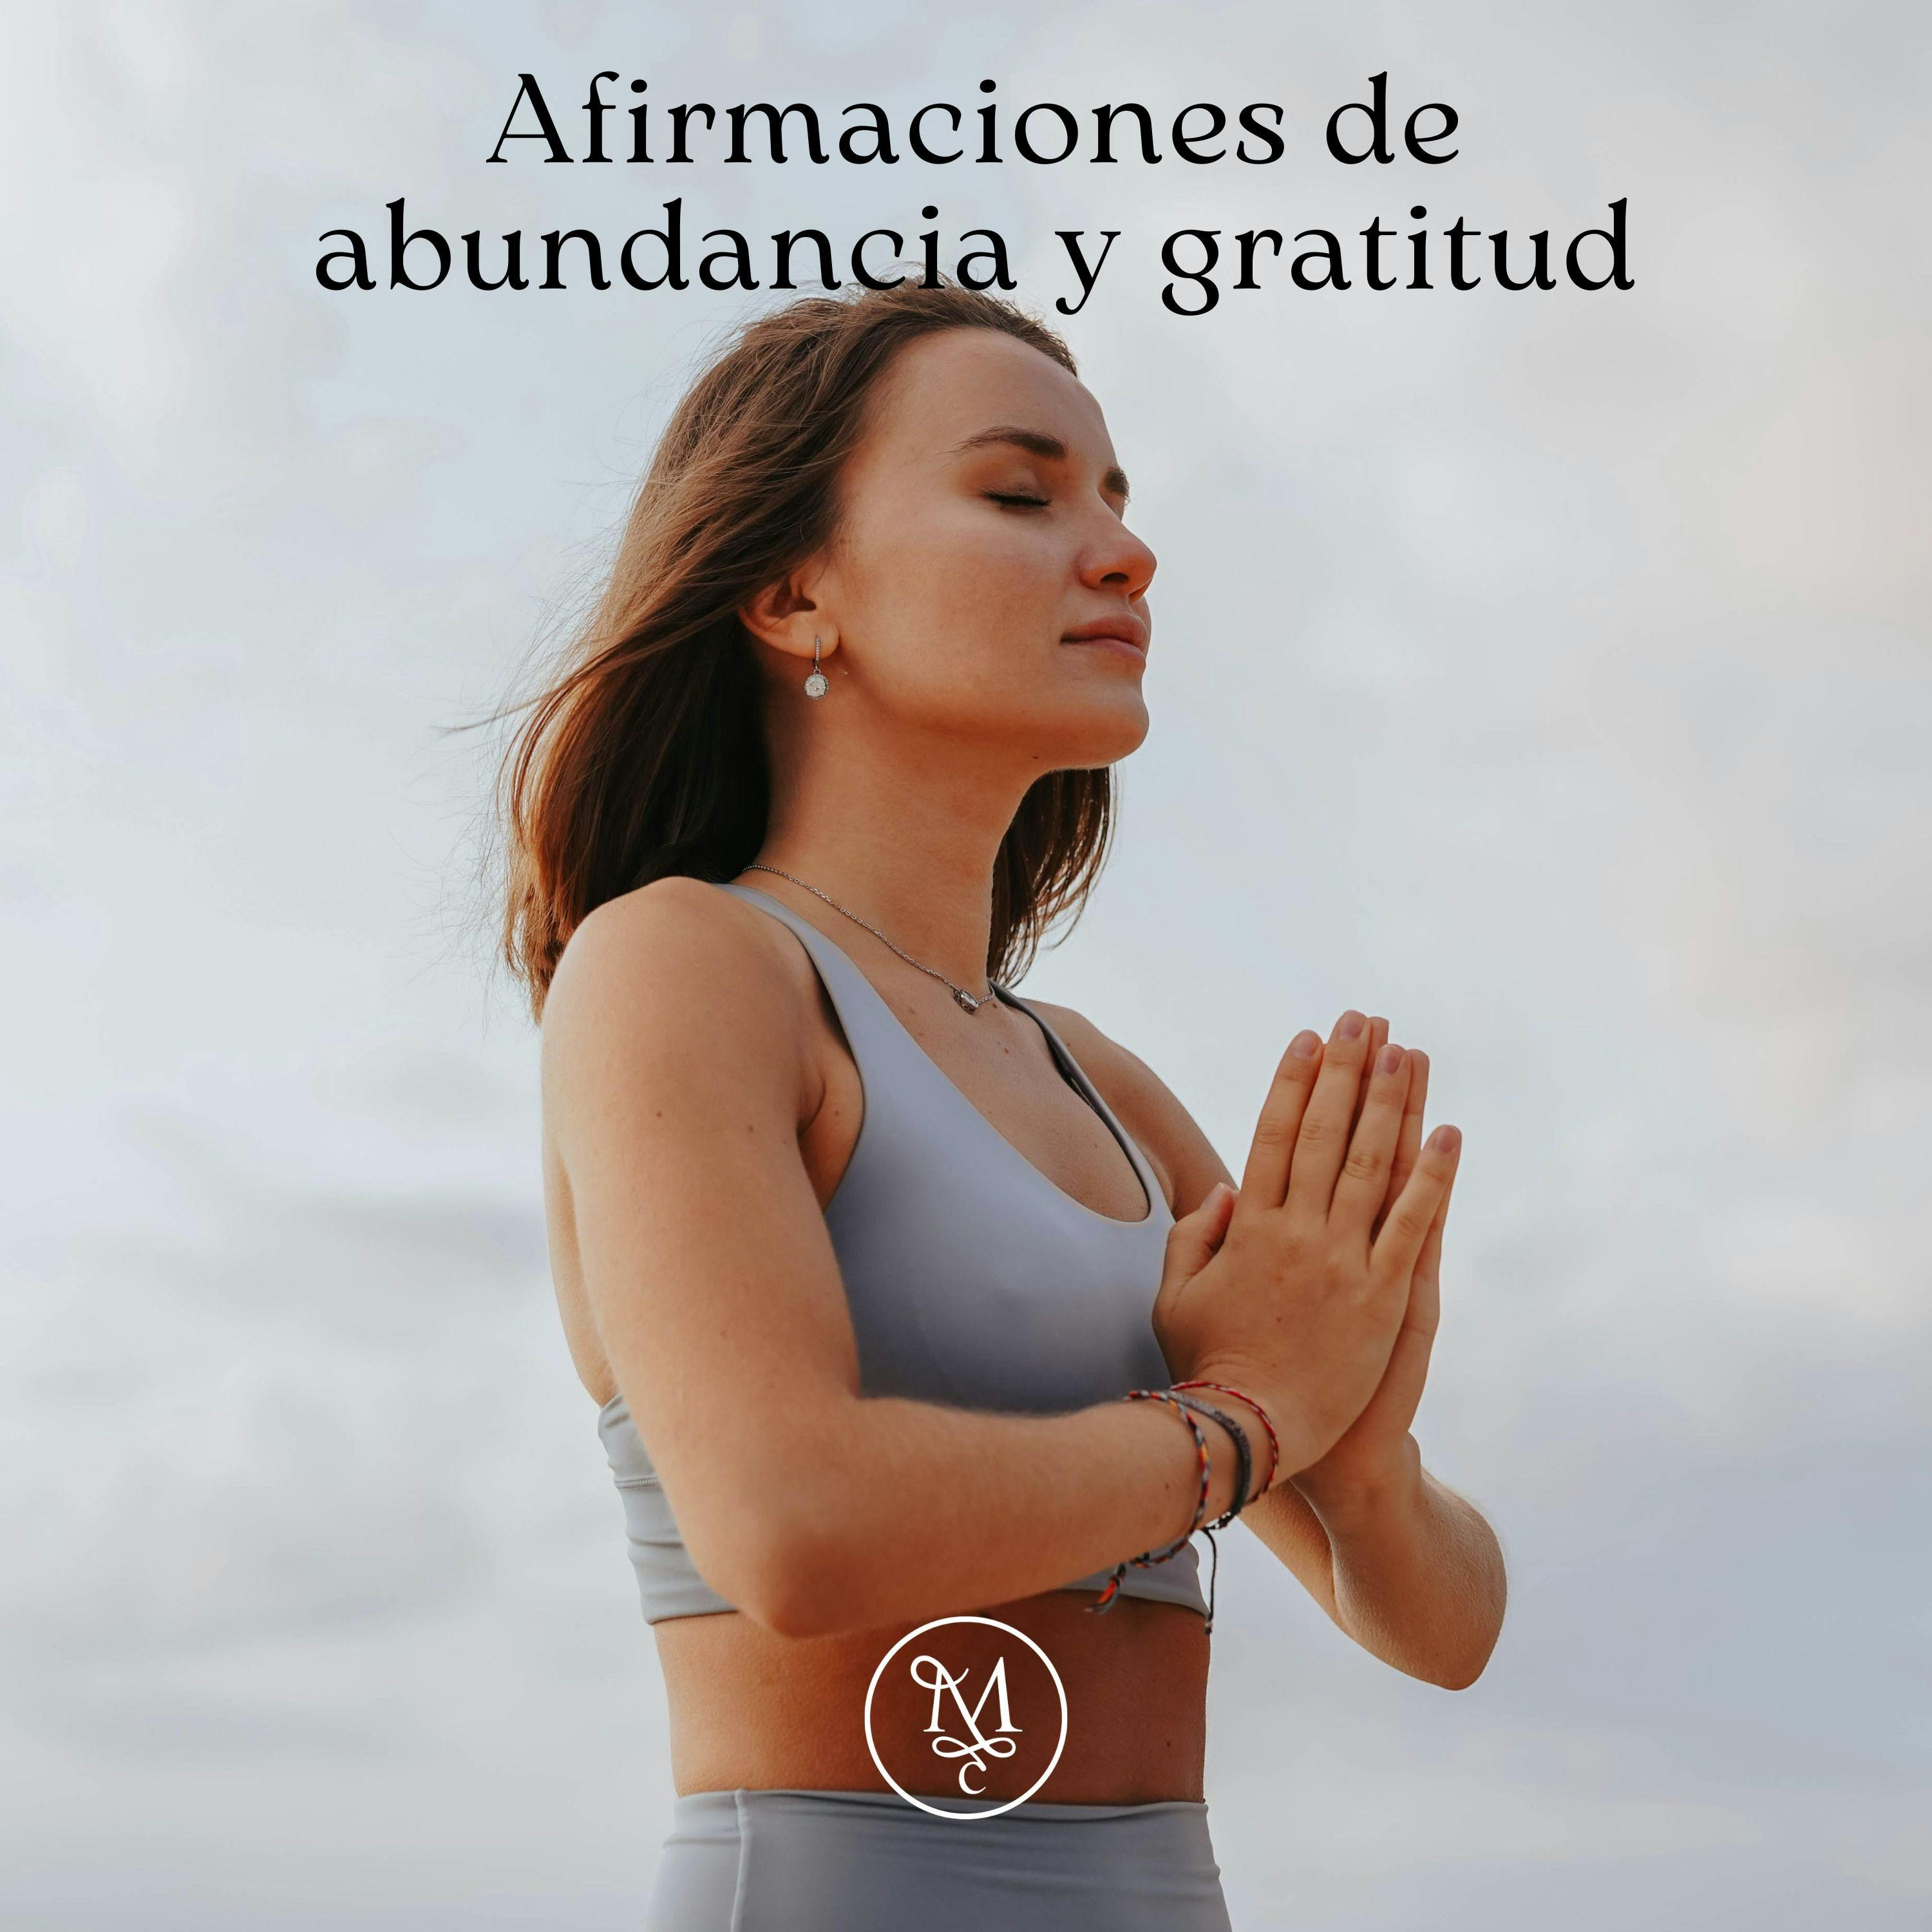 Afirmaciones de abundancia y gratitud 🎈🥰🍀| Encuentra tu paz interior ✨